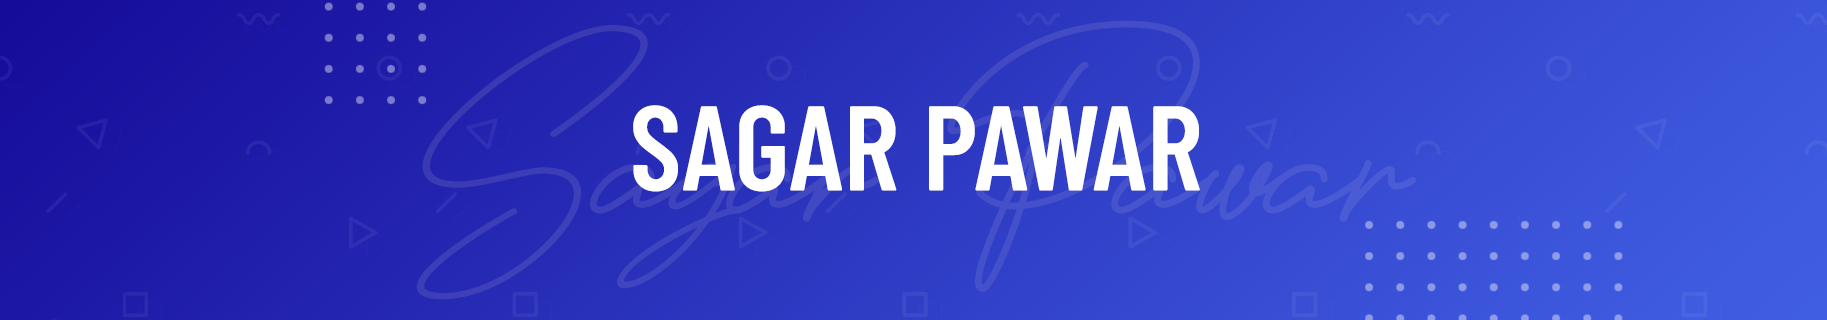 Sagar Pawar のプロファイルバナー